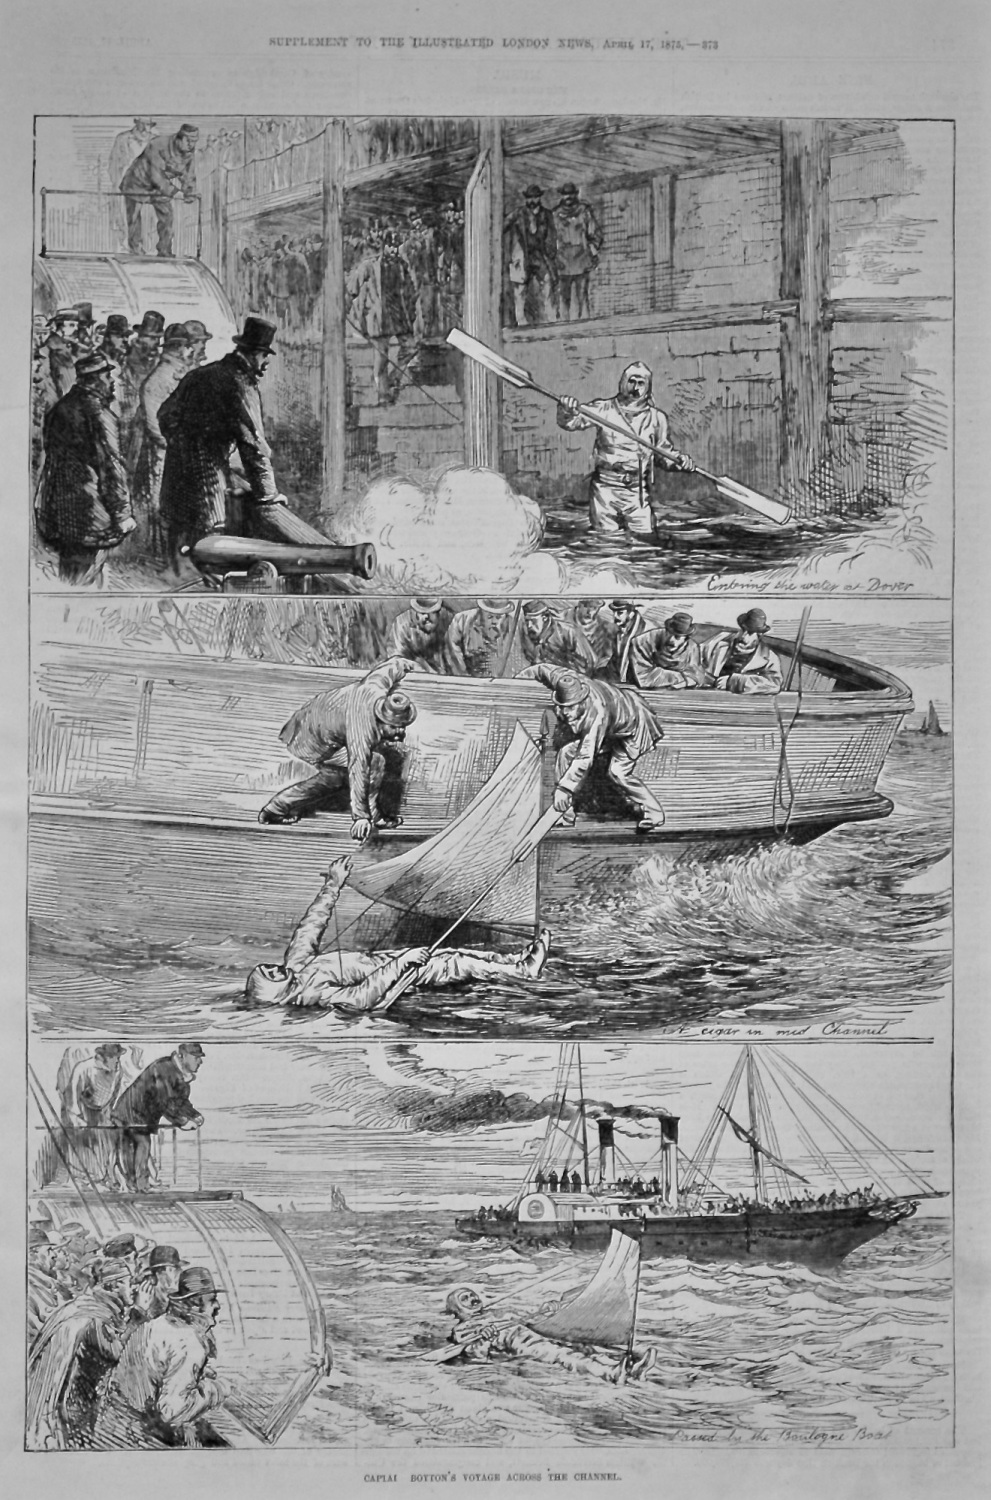 Captain Boyton's Voyage Across the Channel. 1875.